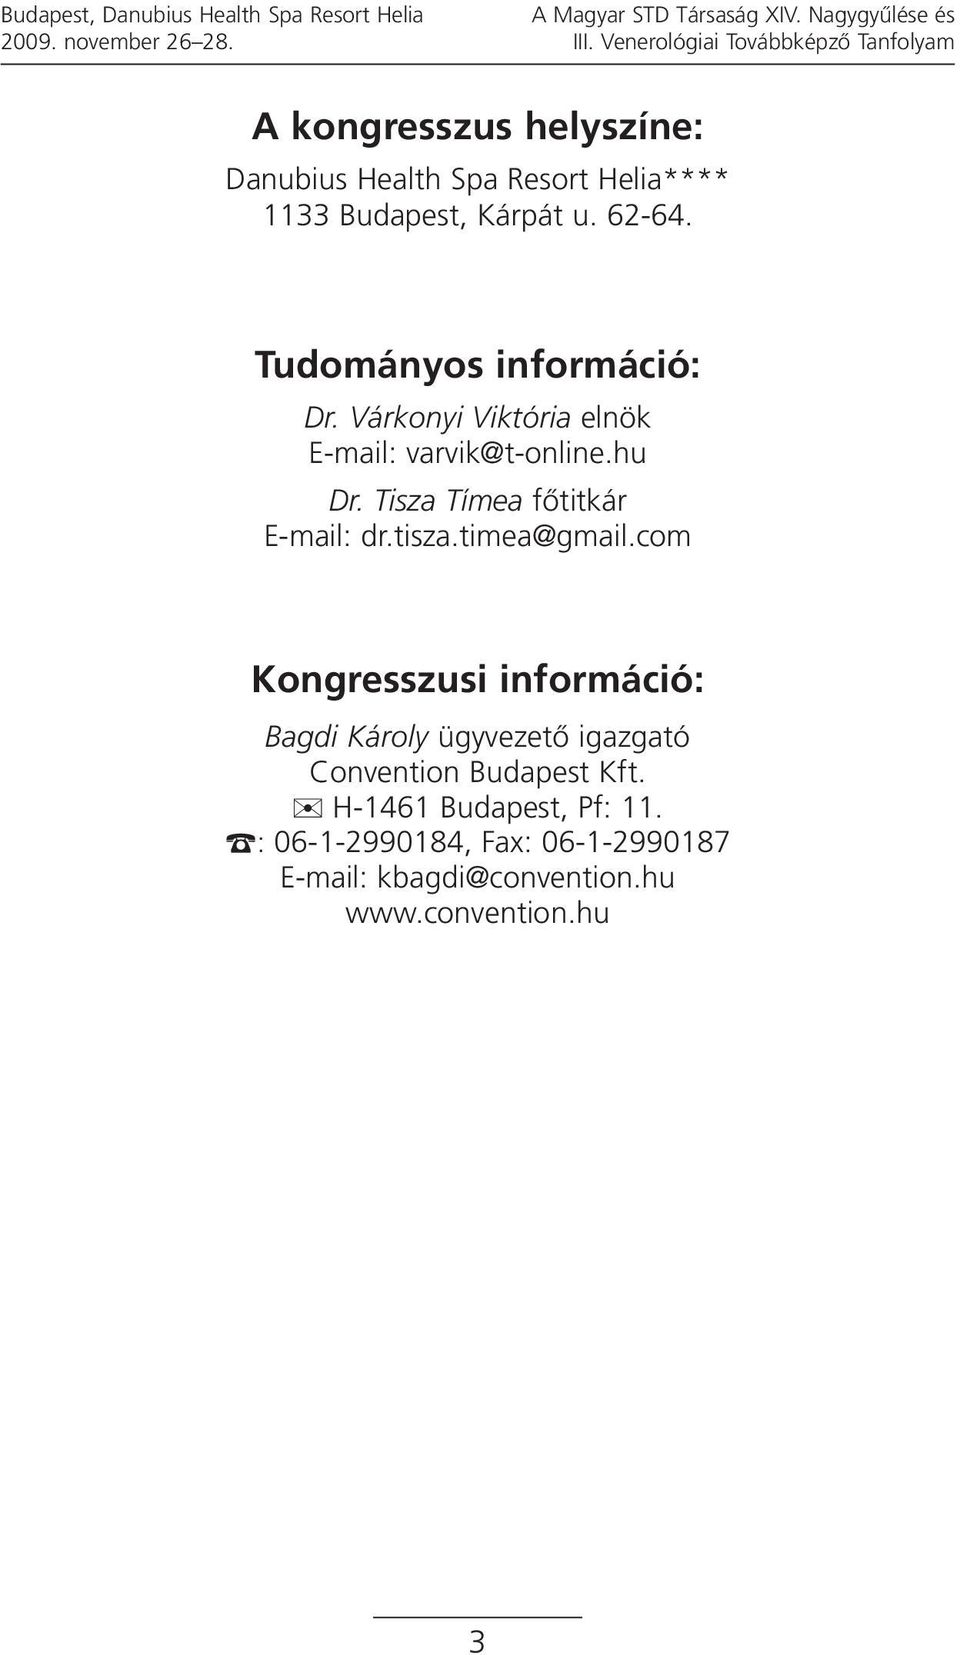 Tudományos információ: Dr. Várkonyi Viktória elnök E-mail: varvik@t-online.hu Dr. Tisza Tímea főtitkár E-mail: dr.tisza.timea@gmail.